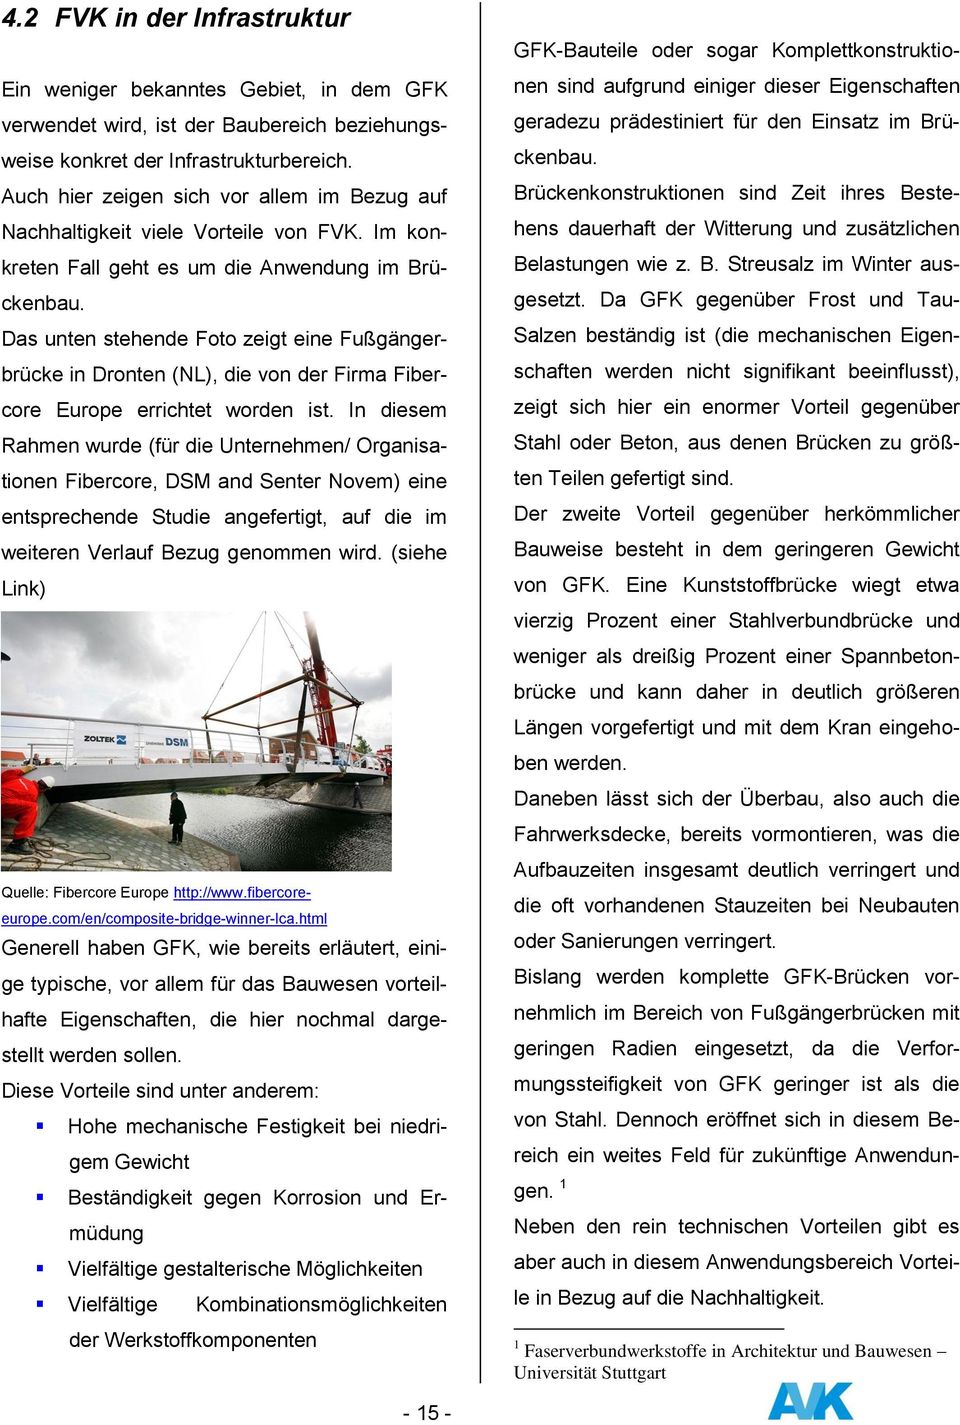 Das unten stehende Foto zeigt eine Fußgängerbrücke in Dronten (NL), die von der Firma Fibercore Europe errichtet worden ist.